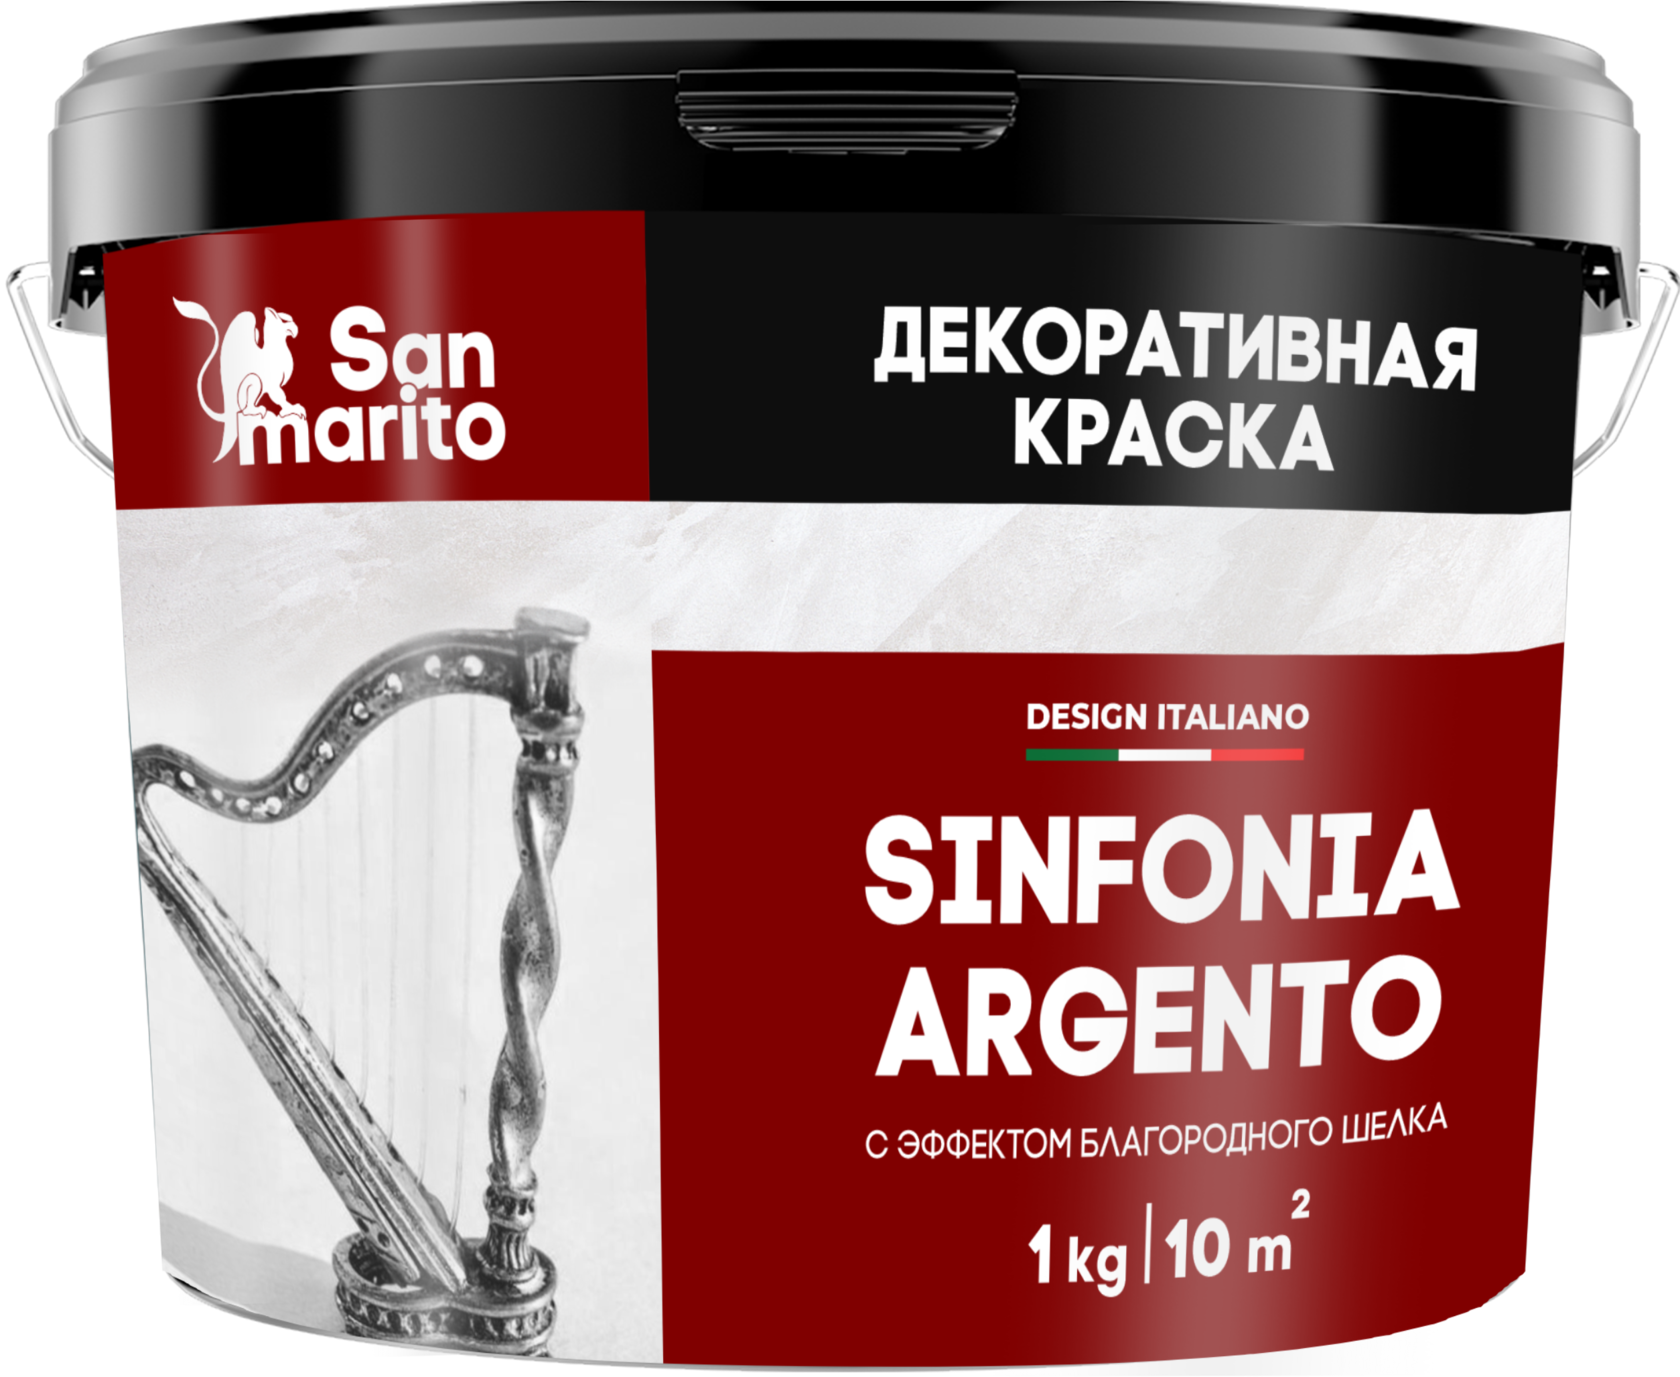 Краска декоративная с эффектом благородного шелка "San Marito Sinfonia Argento" 3 кг